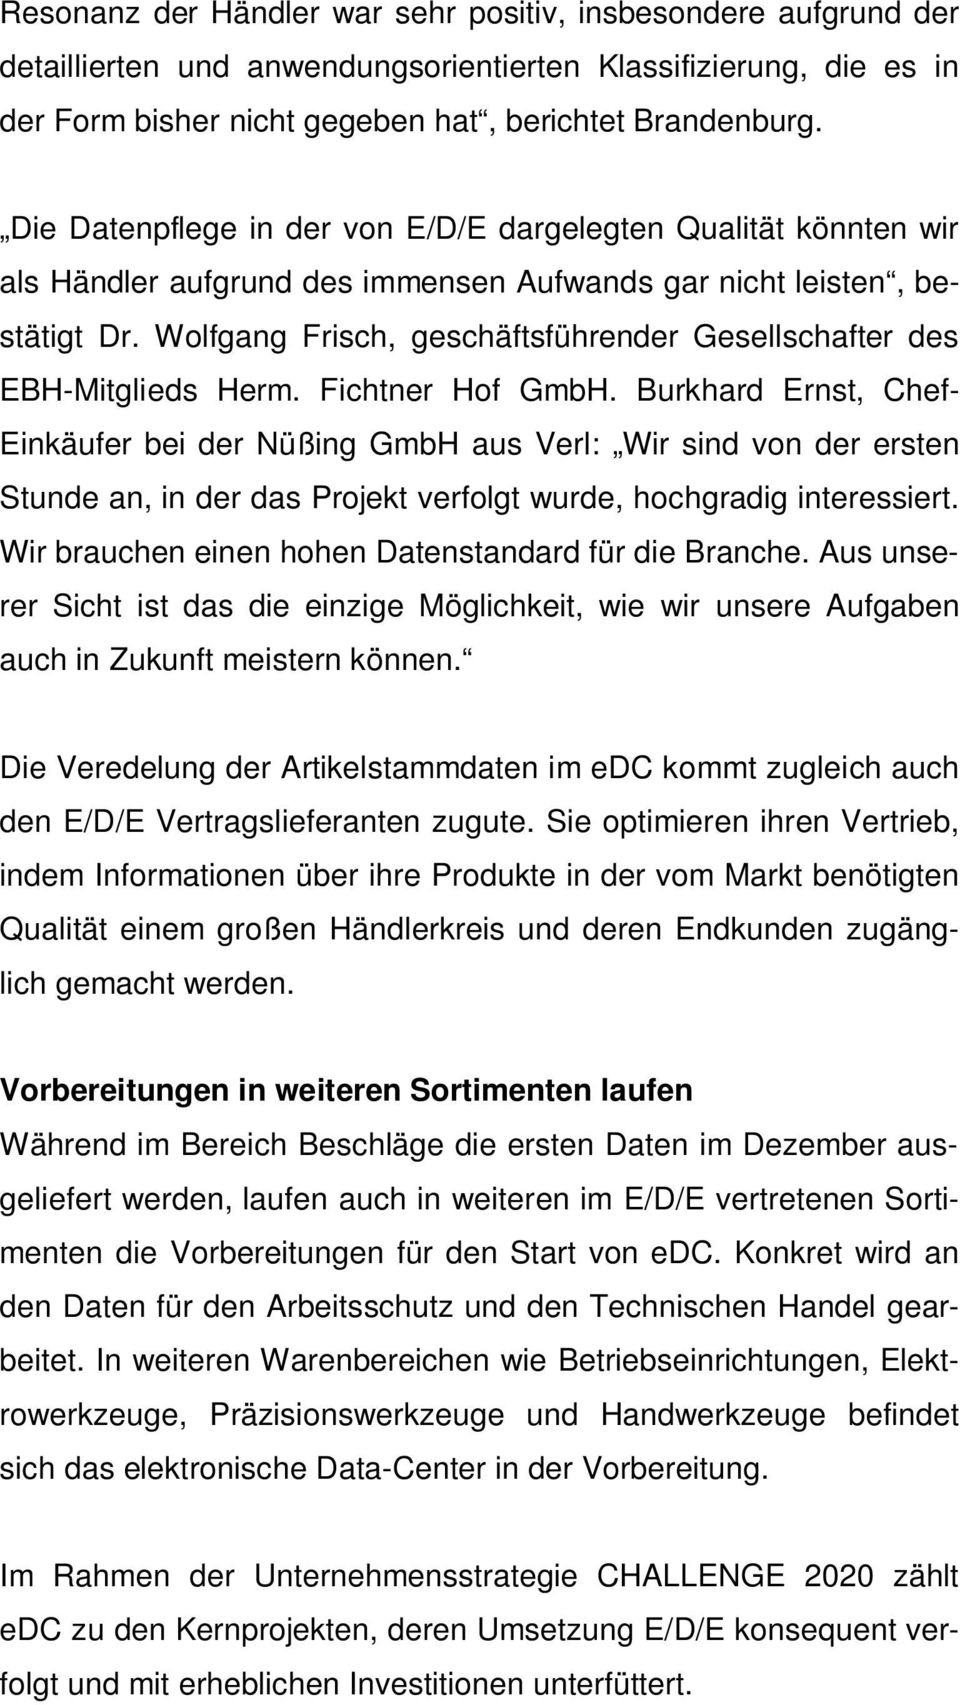 Wolfgang Frisch, geschäftsführender Gesellschafter des EBH-Mitglieds Herm. Fichtner Hof GmbH.